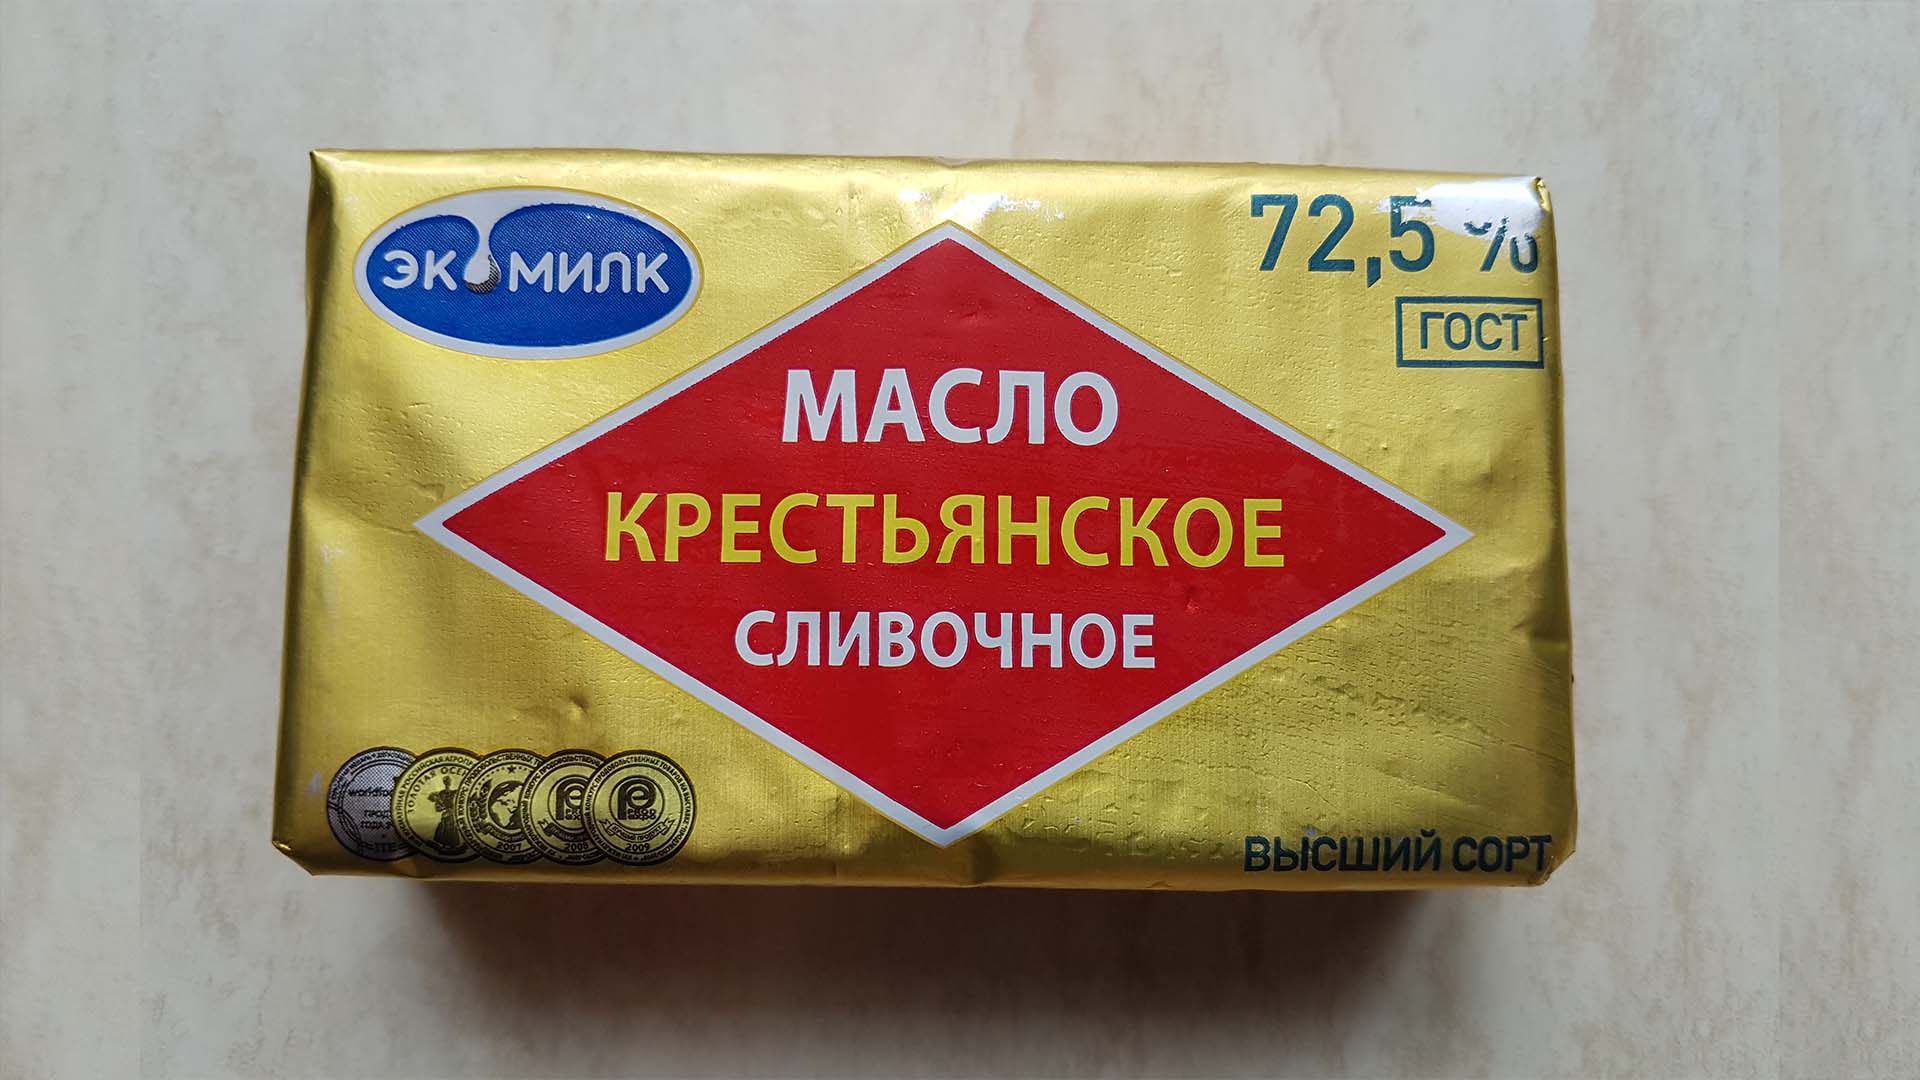 Сливочное масло "экомилк, крестьянское 72,5%" в упаковке на кухонном столе.